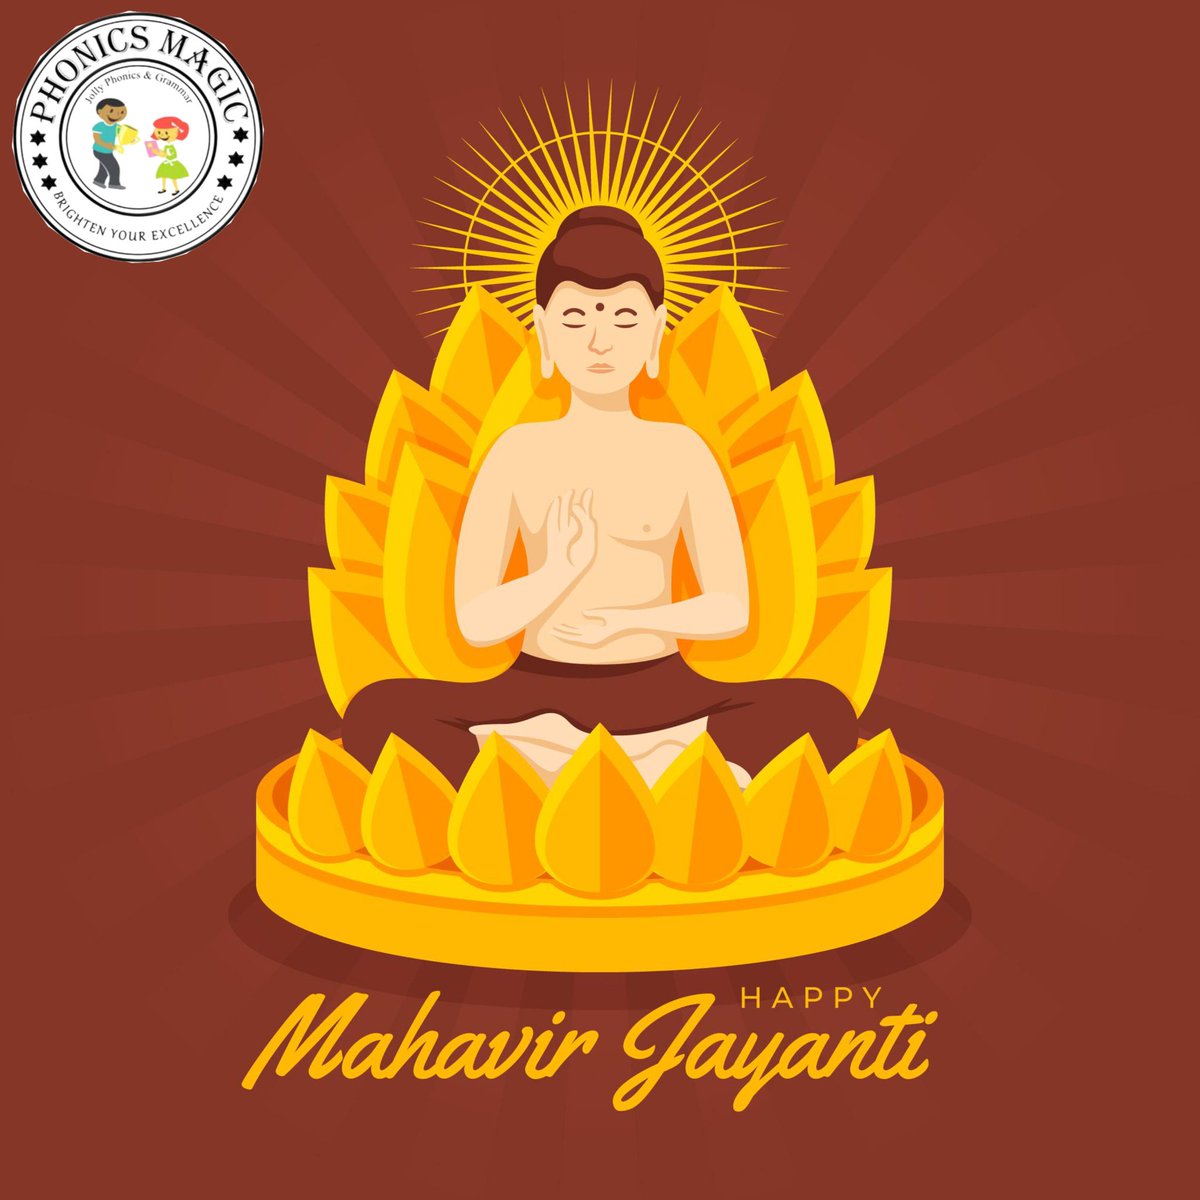 Happy Mahavir Jayanti. #miraroad #miraroadeast #MiraBhayandar #miraroadlocals #miraroadian #mirabhayander #Bhayandar #bhayandareast #bhayanderwest #Jainism #JainFestival #jaintemple #MahavirJayanti #MahaveerJayanti #jain #jaindharam #jaijinendra #bhakti